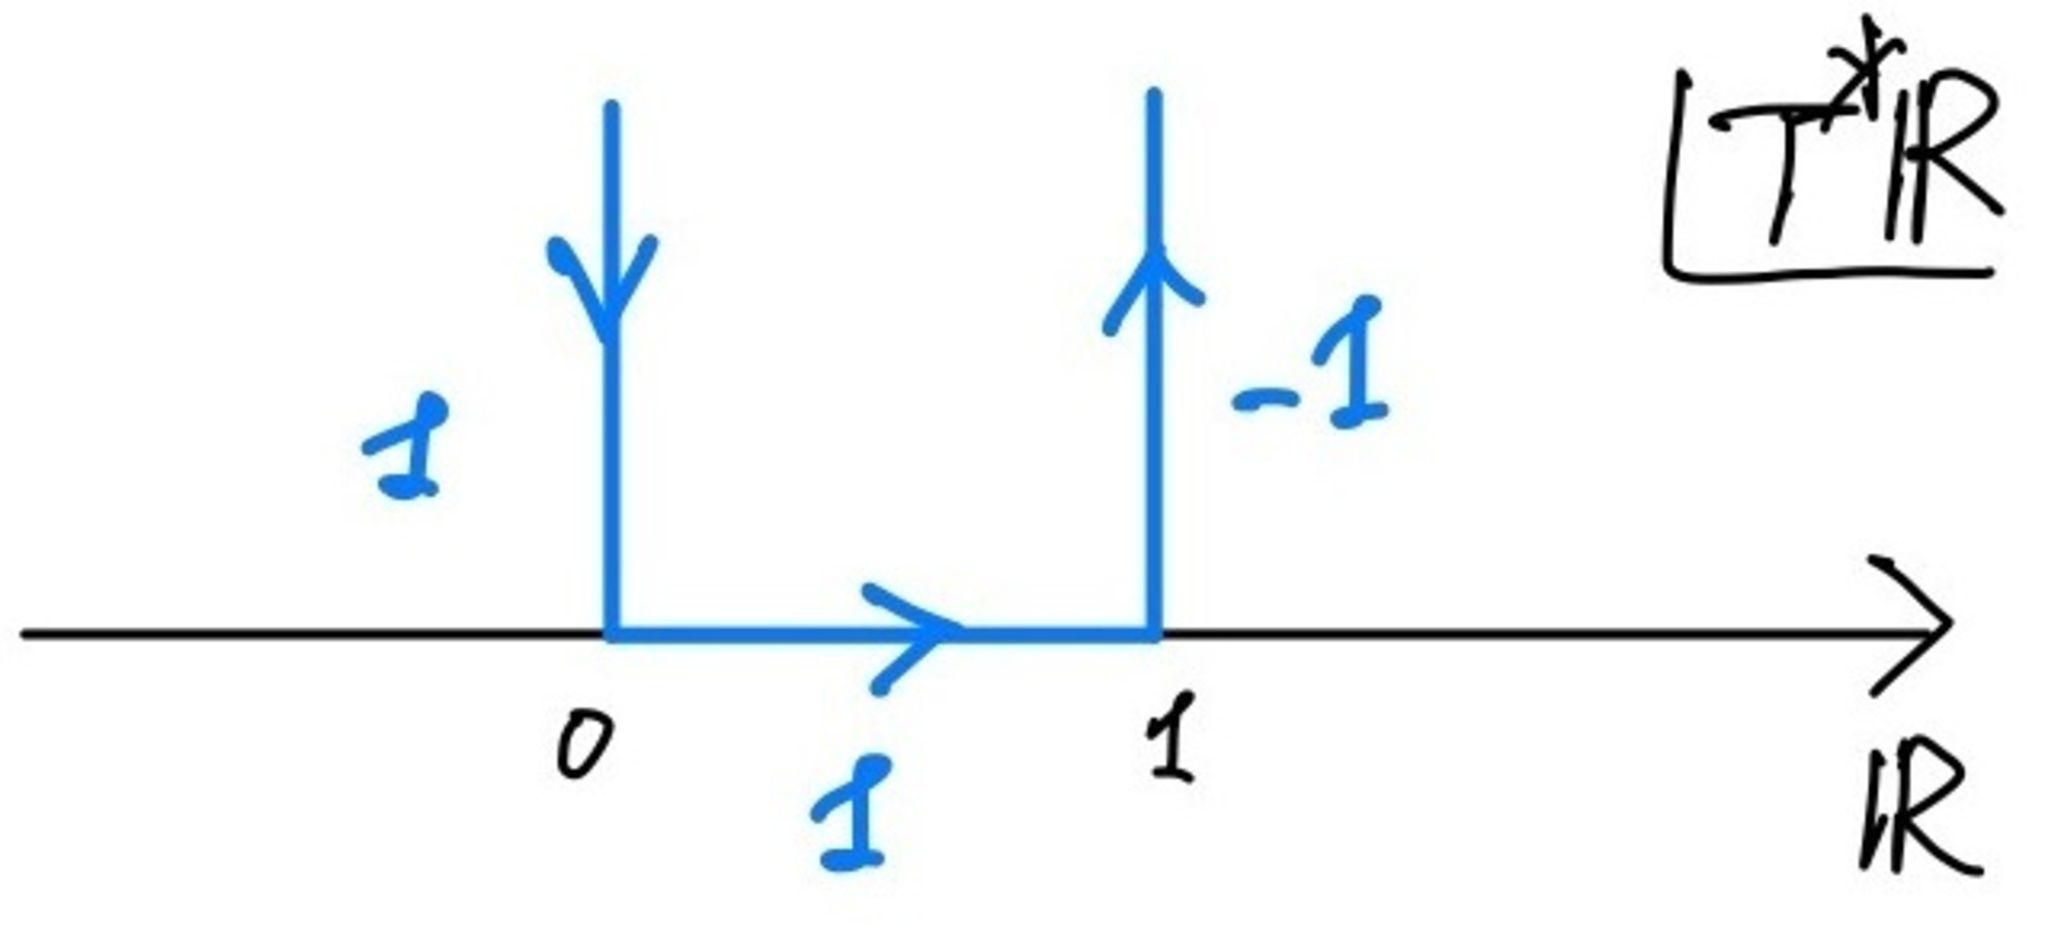 半開区間上の定数層のゼロ拡張の特性サイクル